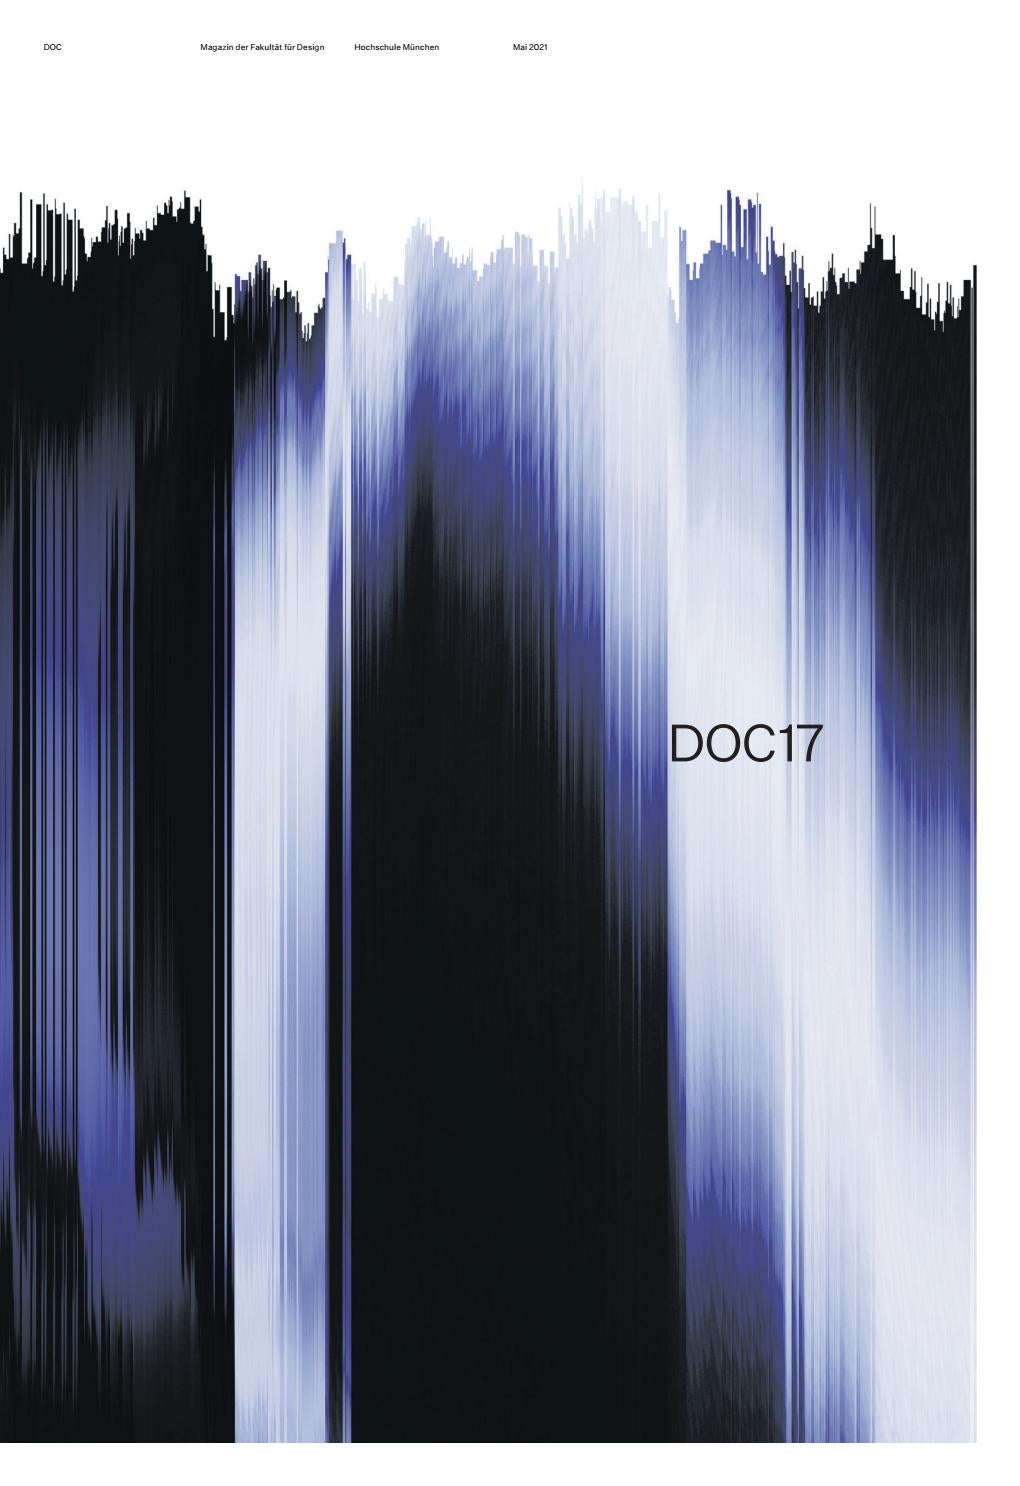 DOC17 – Magazin der Fakultät für Design, Hochschule München